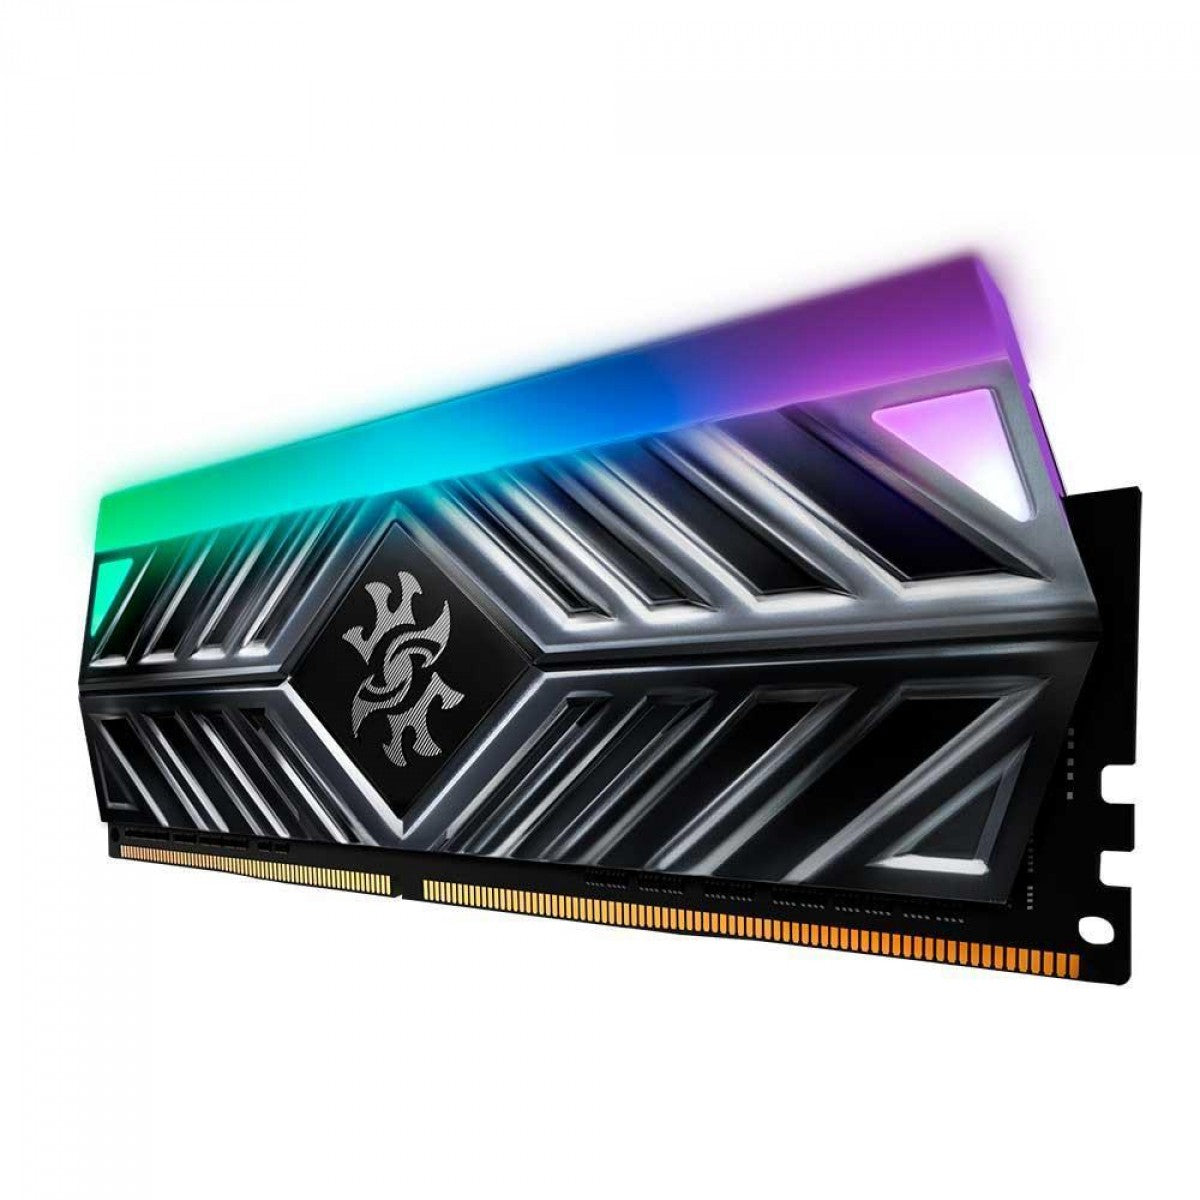 Memória DDR4 XPG Spectrix D41, 8GB, 3200MHz, RGB, Gray, AX4U32008G16A-ST41